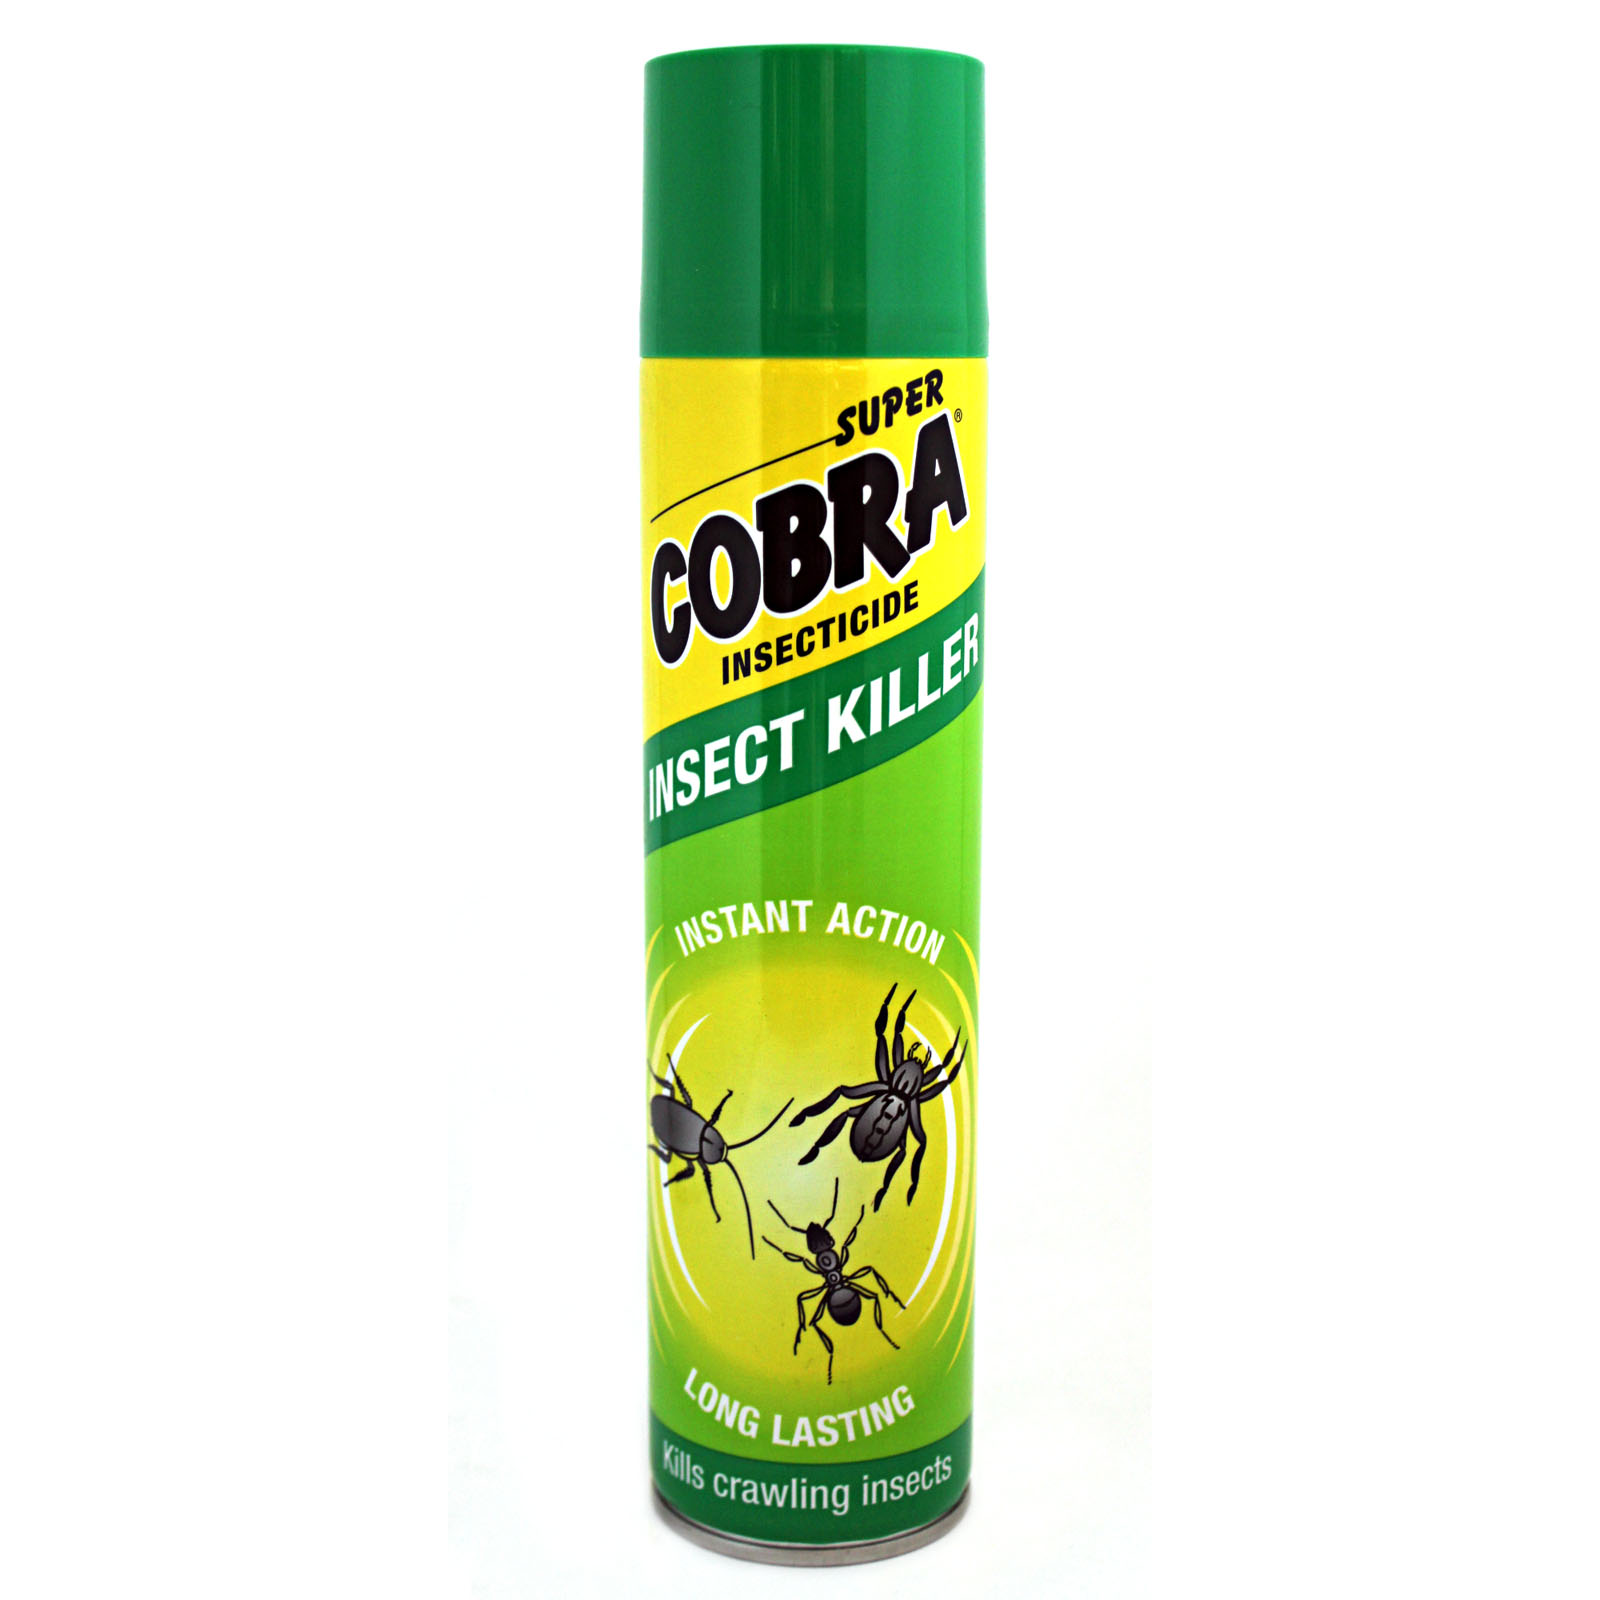 Отрава от насекомых. Super Cobra insect Killer инсектицидный аэрозоль от ползающих насекомых 400 мл. Combat superspray аэрозоль от насекомых, 400мл. Аэрозоль супер Кобра 400мл.. Аэрозоль от ползающих насекомых Кобра 400мл (12).